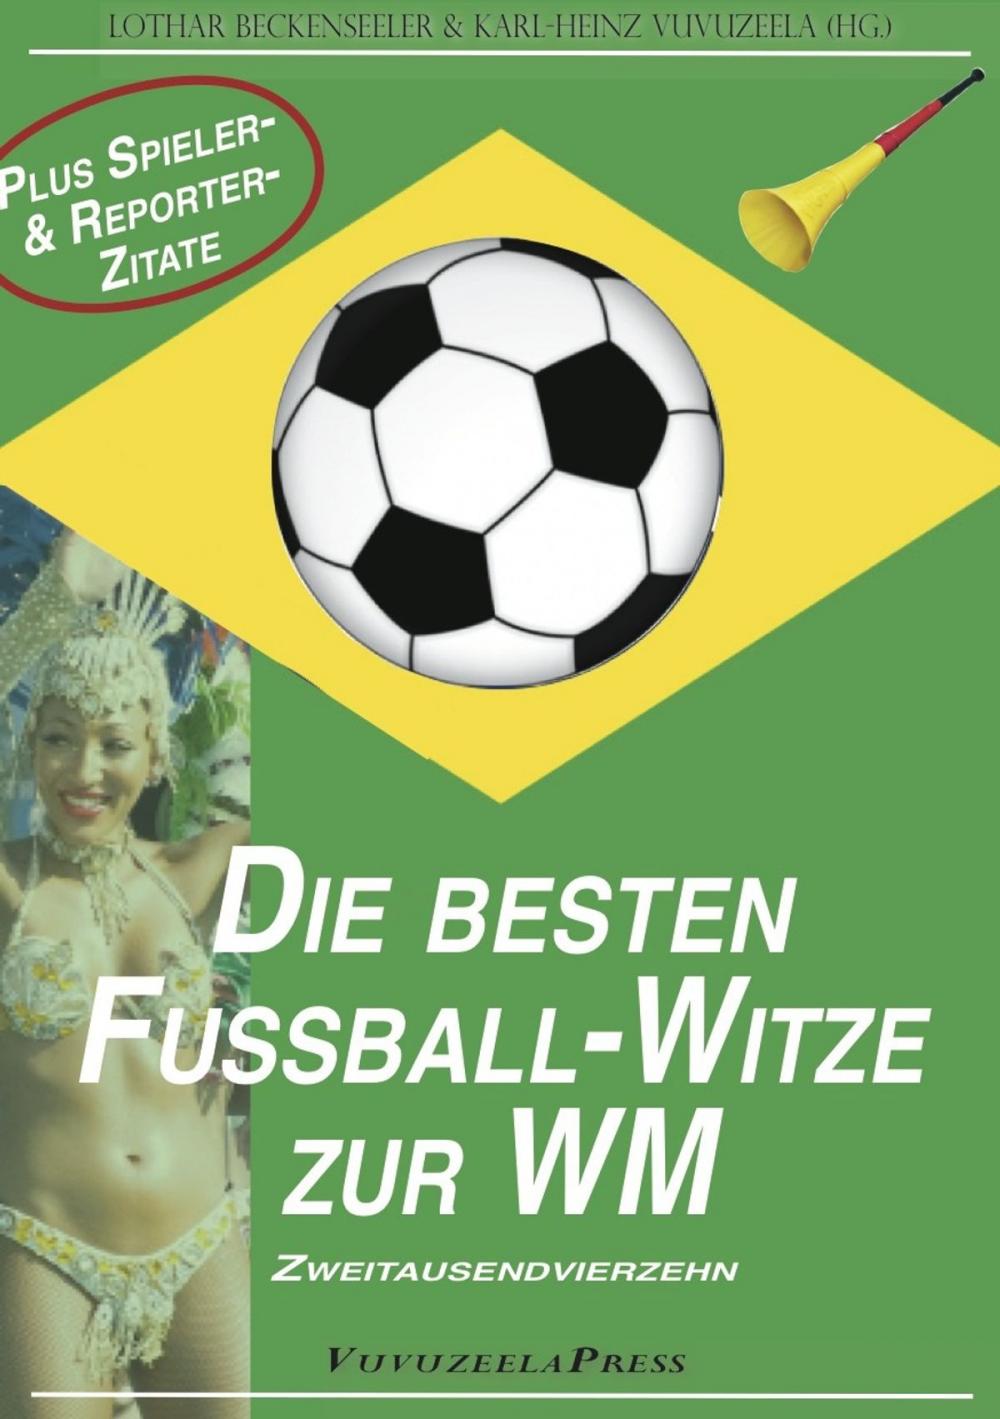 Big bigCover of WM 2014: Die besten Fußball-Witze & die verrücktesten Spieler- und Reportersprüche